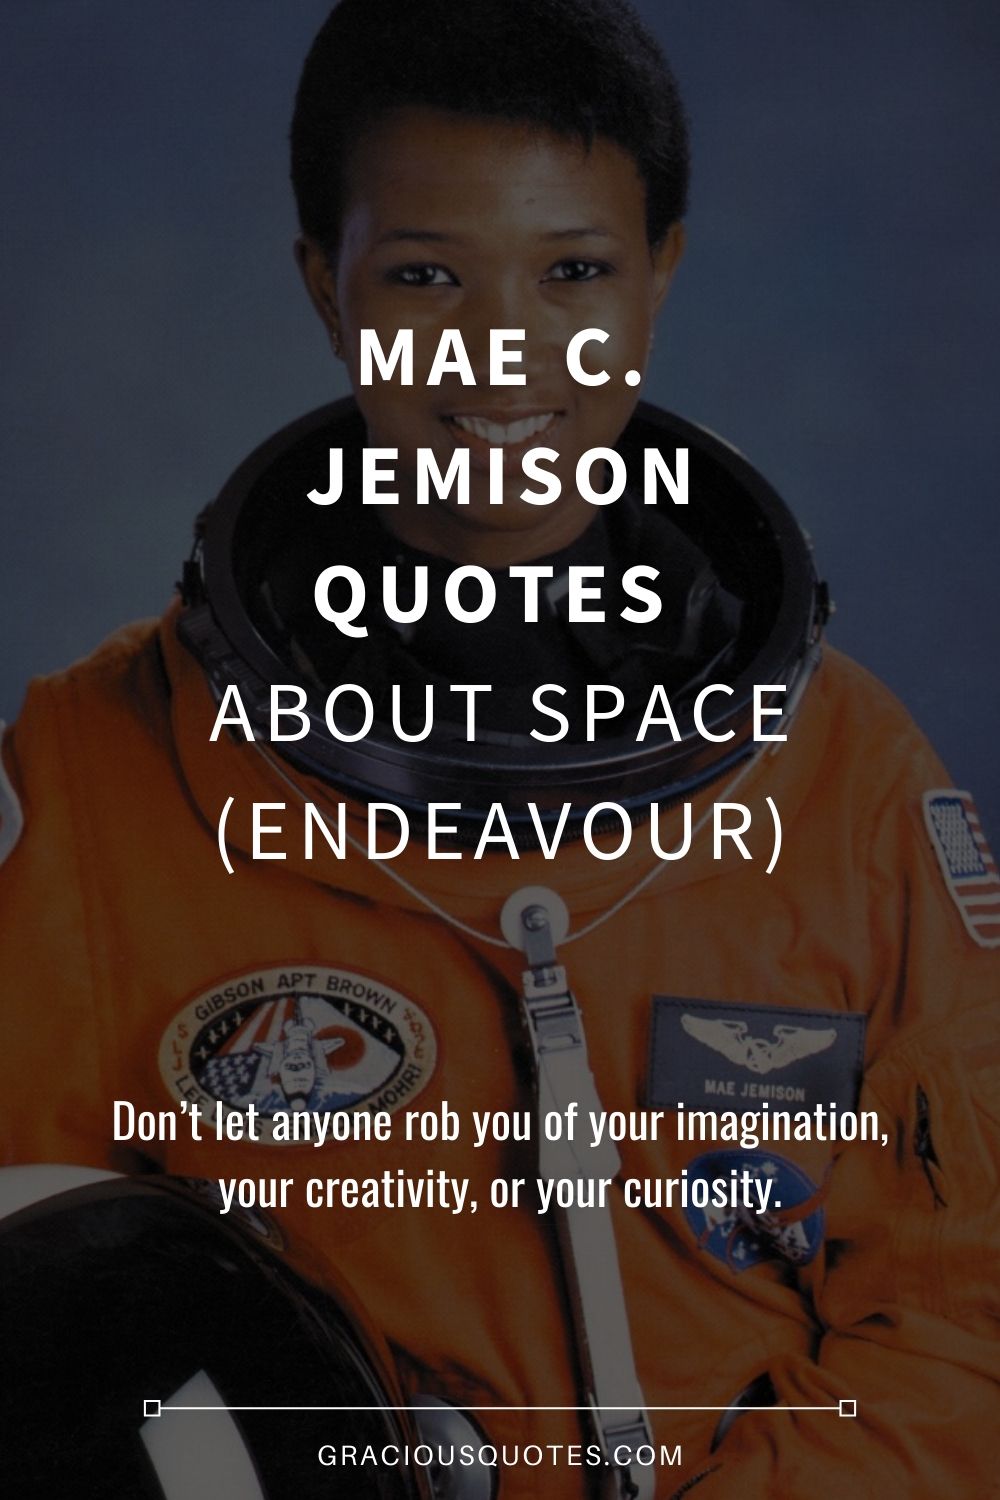 Mae C. Jemison Quotes About Space (ENDEAVOUR) - Gracious Quotes